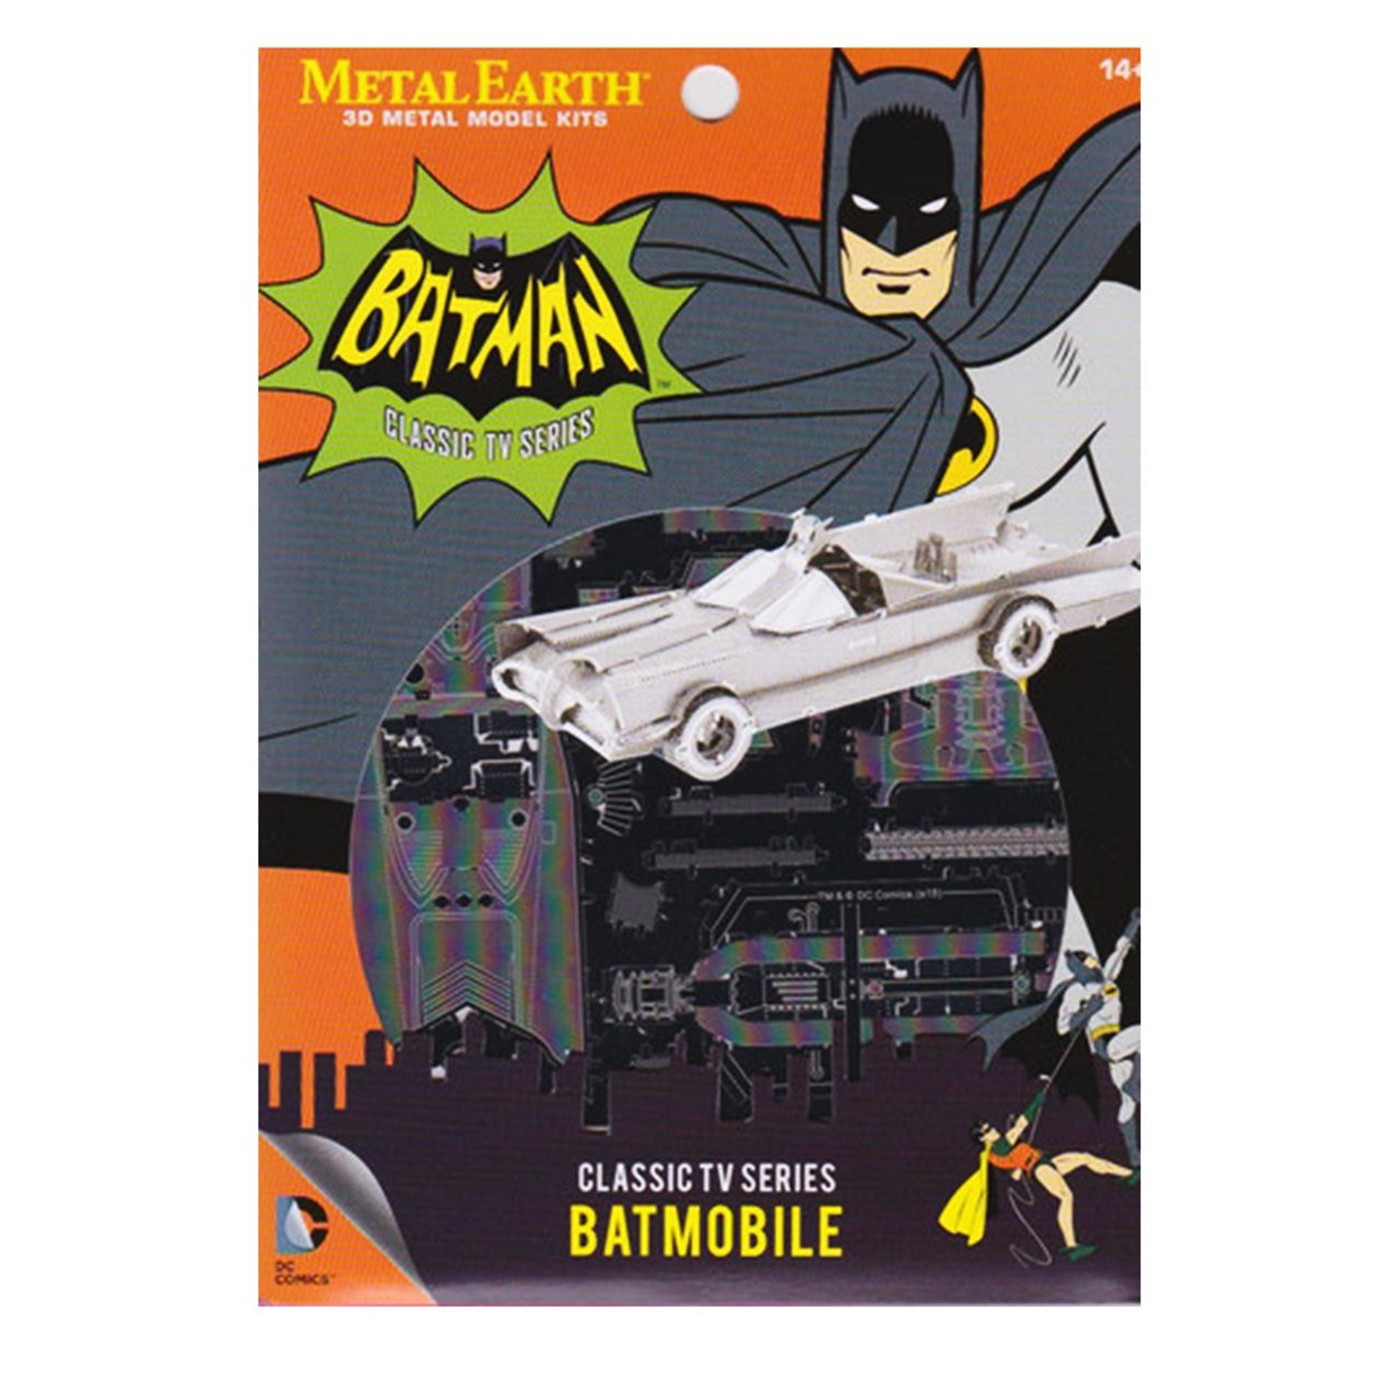 Batman TV Series Batmobile Metal Earth Model Kit